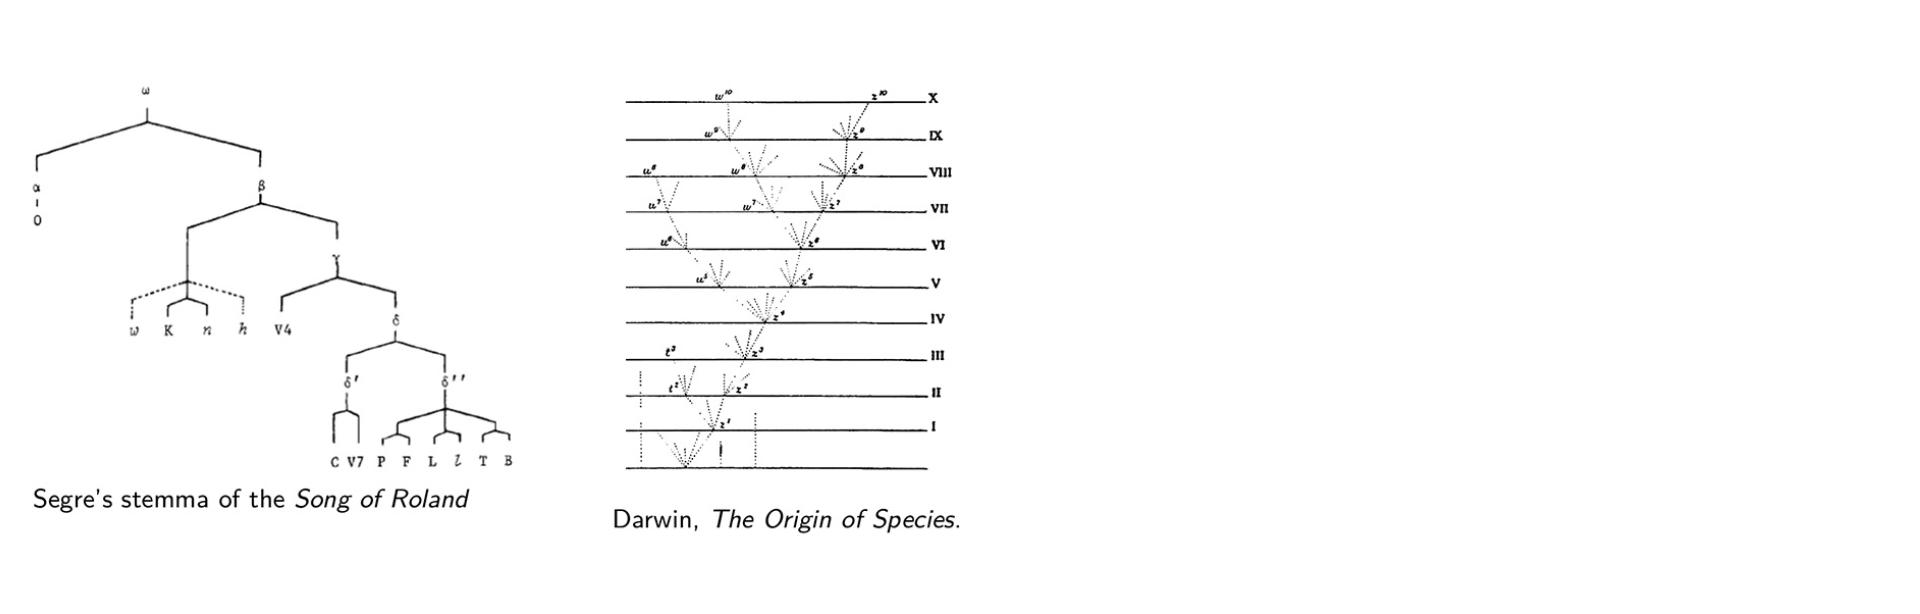 Stemma de la Chanson de Roland, selon Cesare Segre (1971) ; et arbre phylogénétique, tiré de Charles Darwin, On The Origin of Species (1859)